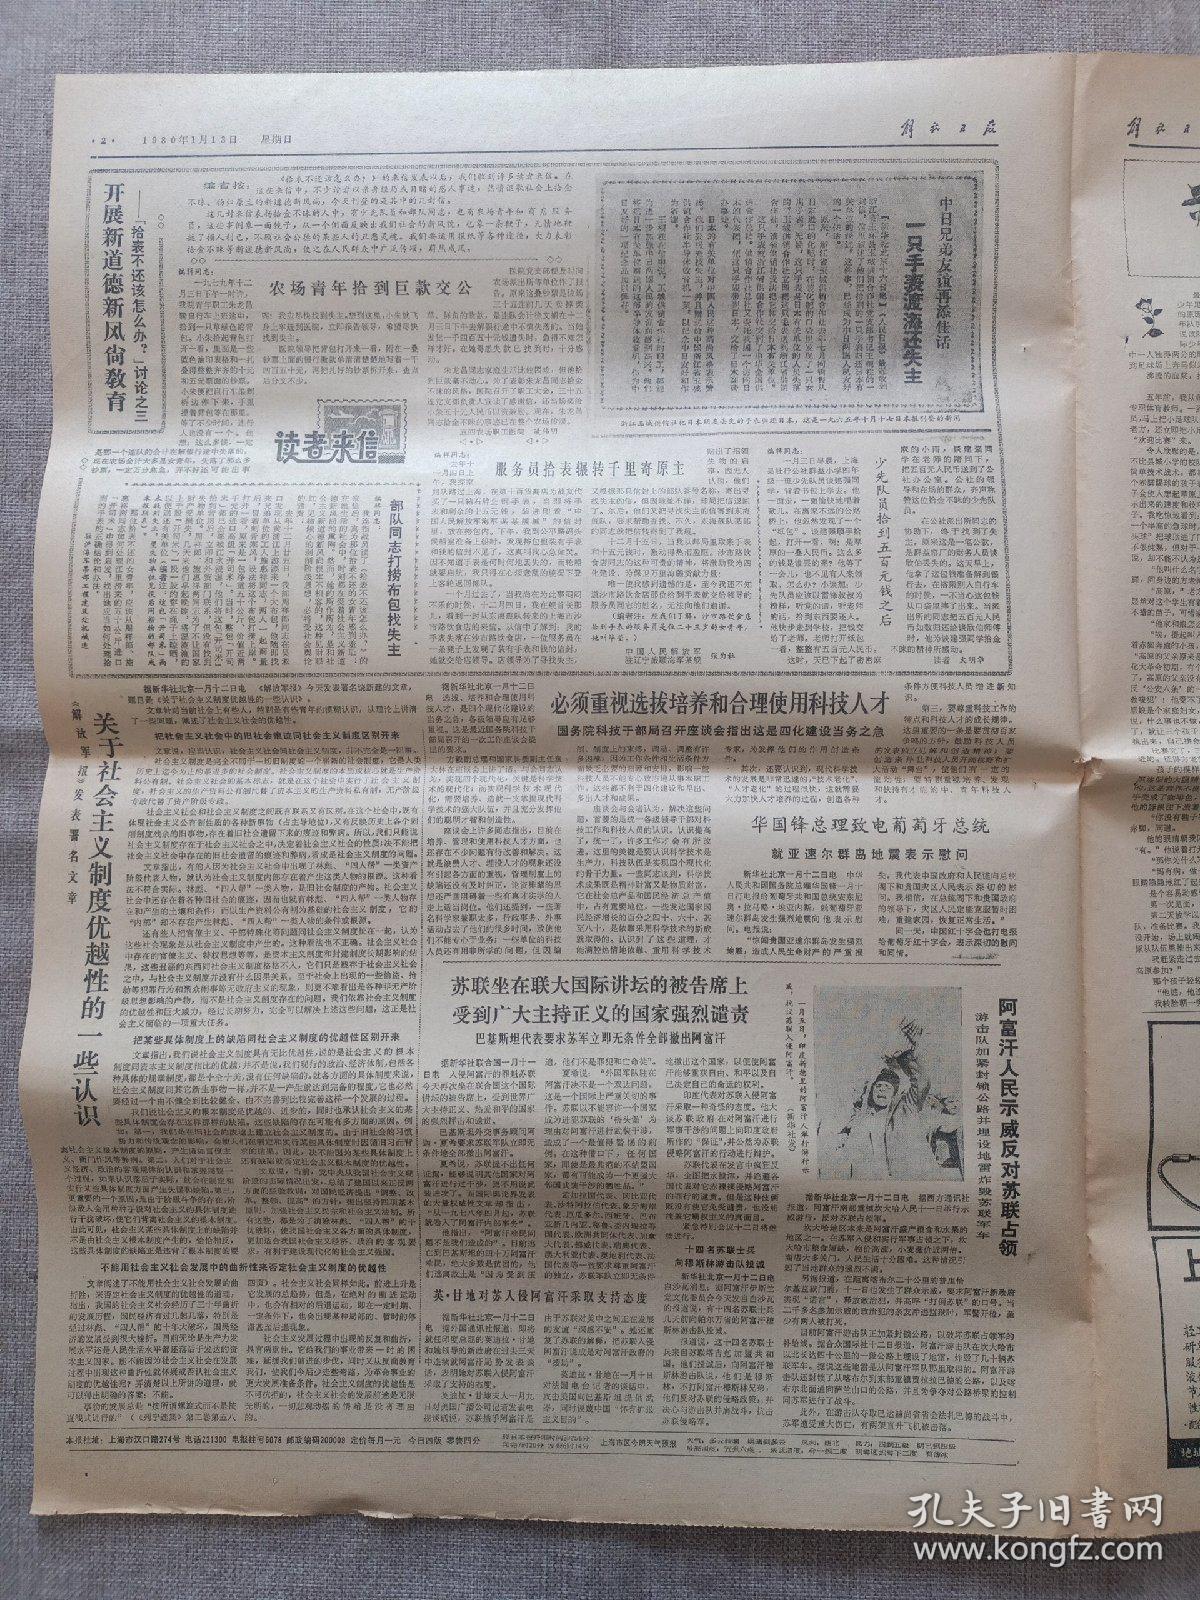 1980年1月13日《解放日报》